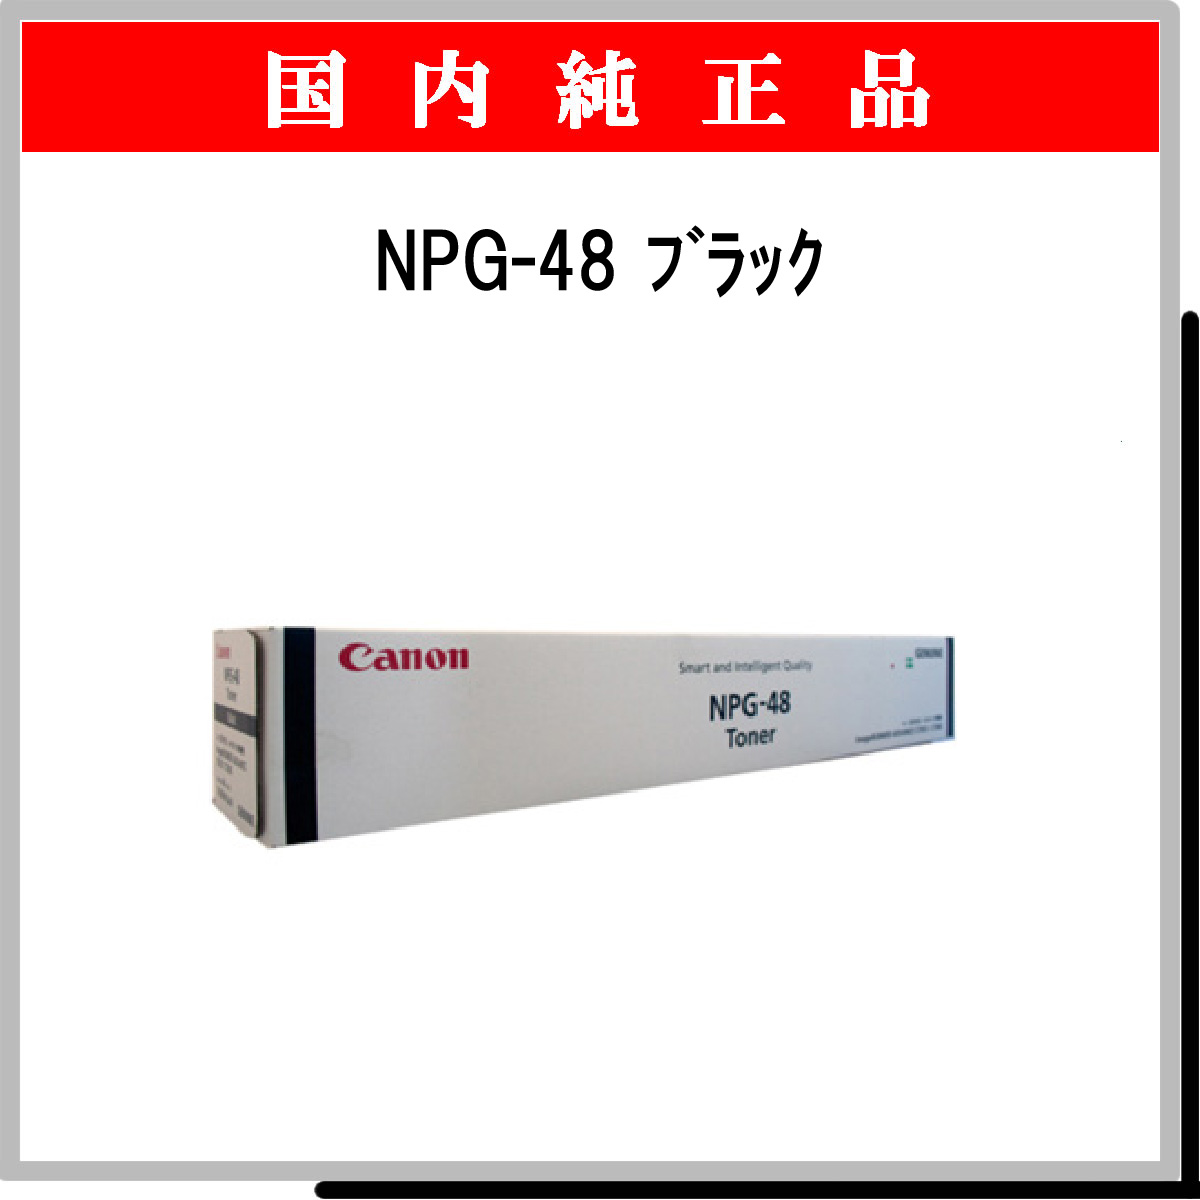 NPG-48 ﾌﾞﾗｯｸ 純正